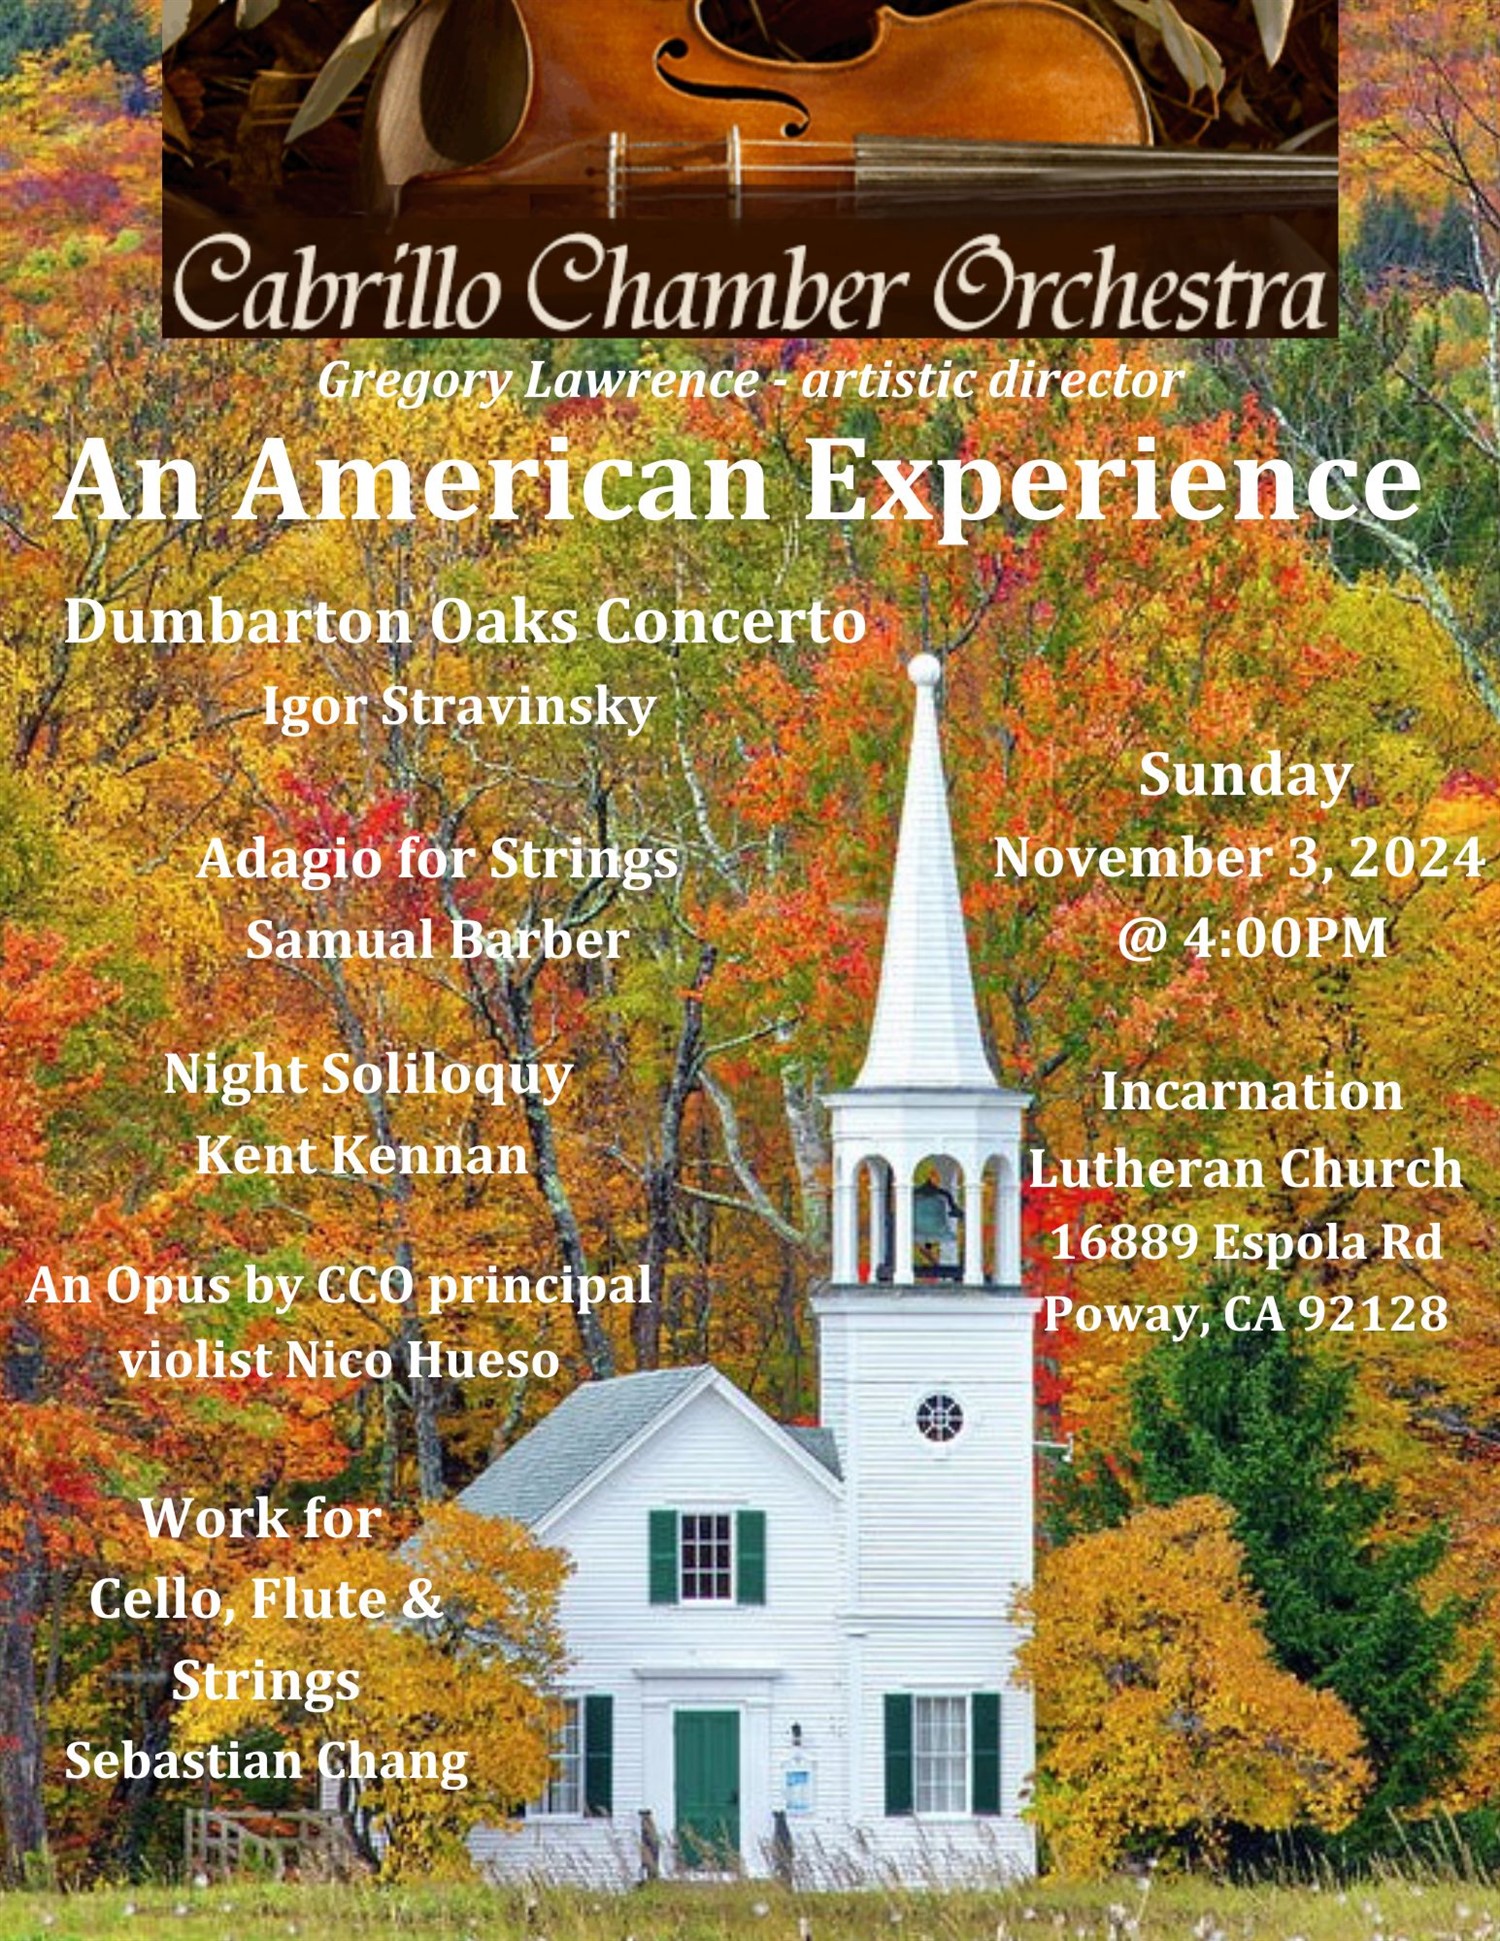 'An American Experience'  on nov. 03, 04:00@Incarnation Lutheran Church - Compra entradas y obtén información enCabrillo Chamber Orchestra 